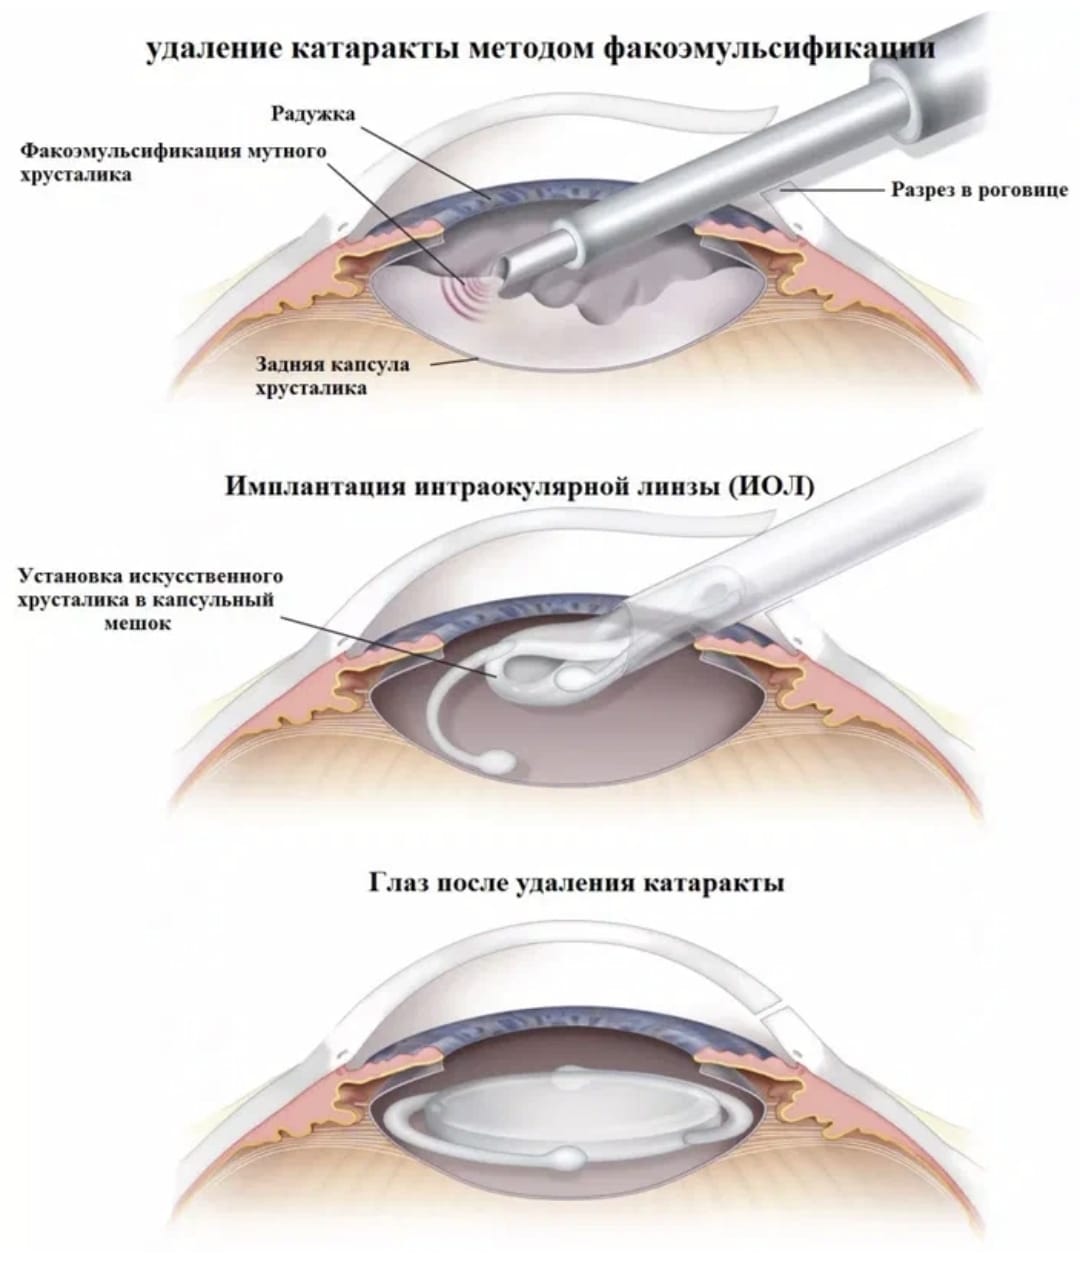 Что можно делать после катаракты. Ультразвуковая факоэмульсификация катаракты этапы. Ультразвуковая факоэмульсификация с имплантацией ИОЛ. Техника факоэмульсификации катаракты с имплантацией ИОЛ. Факоэмульсификация катаракты этапы операции.